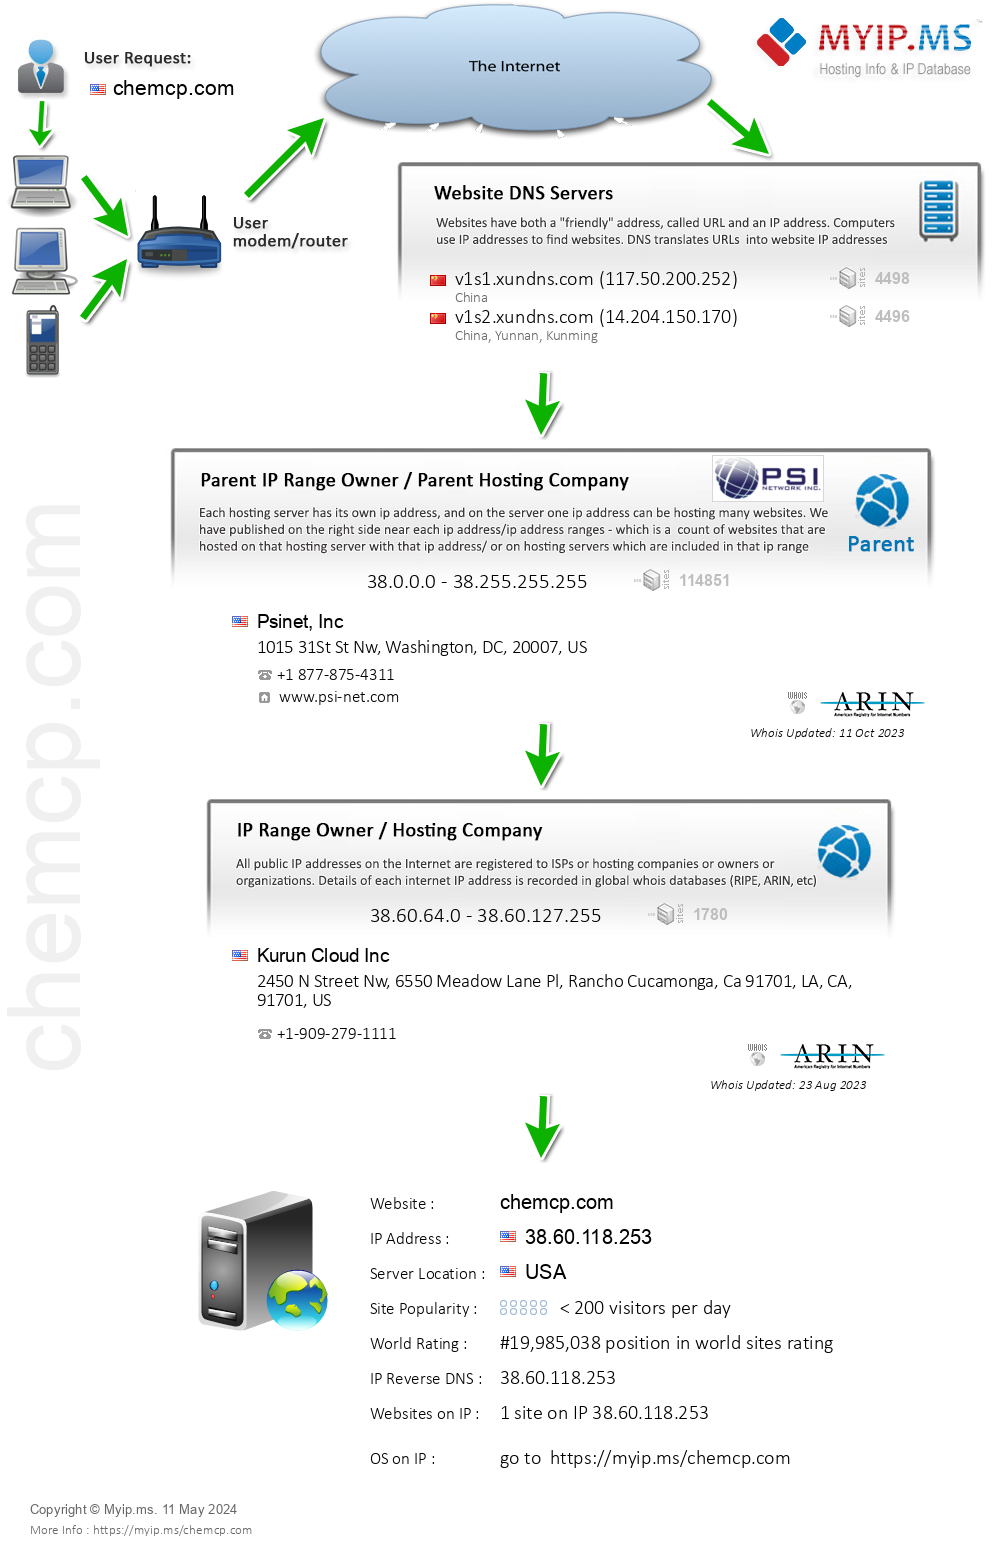 Chemcp.com - Website Hosting Visual IP Diagram